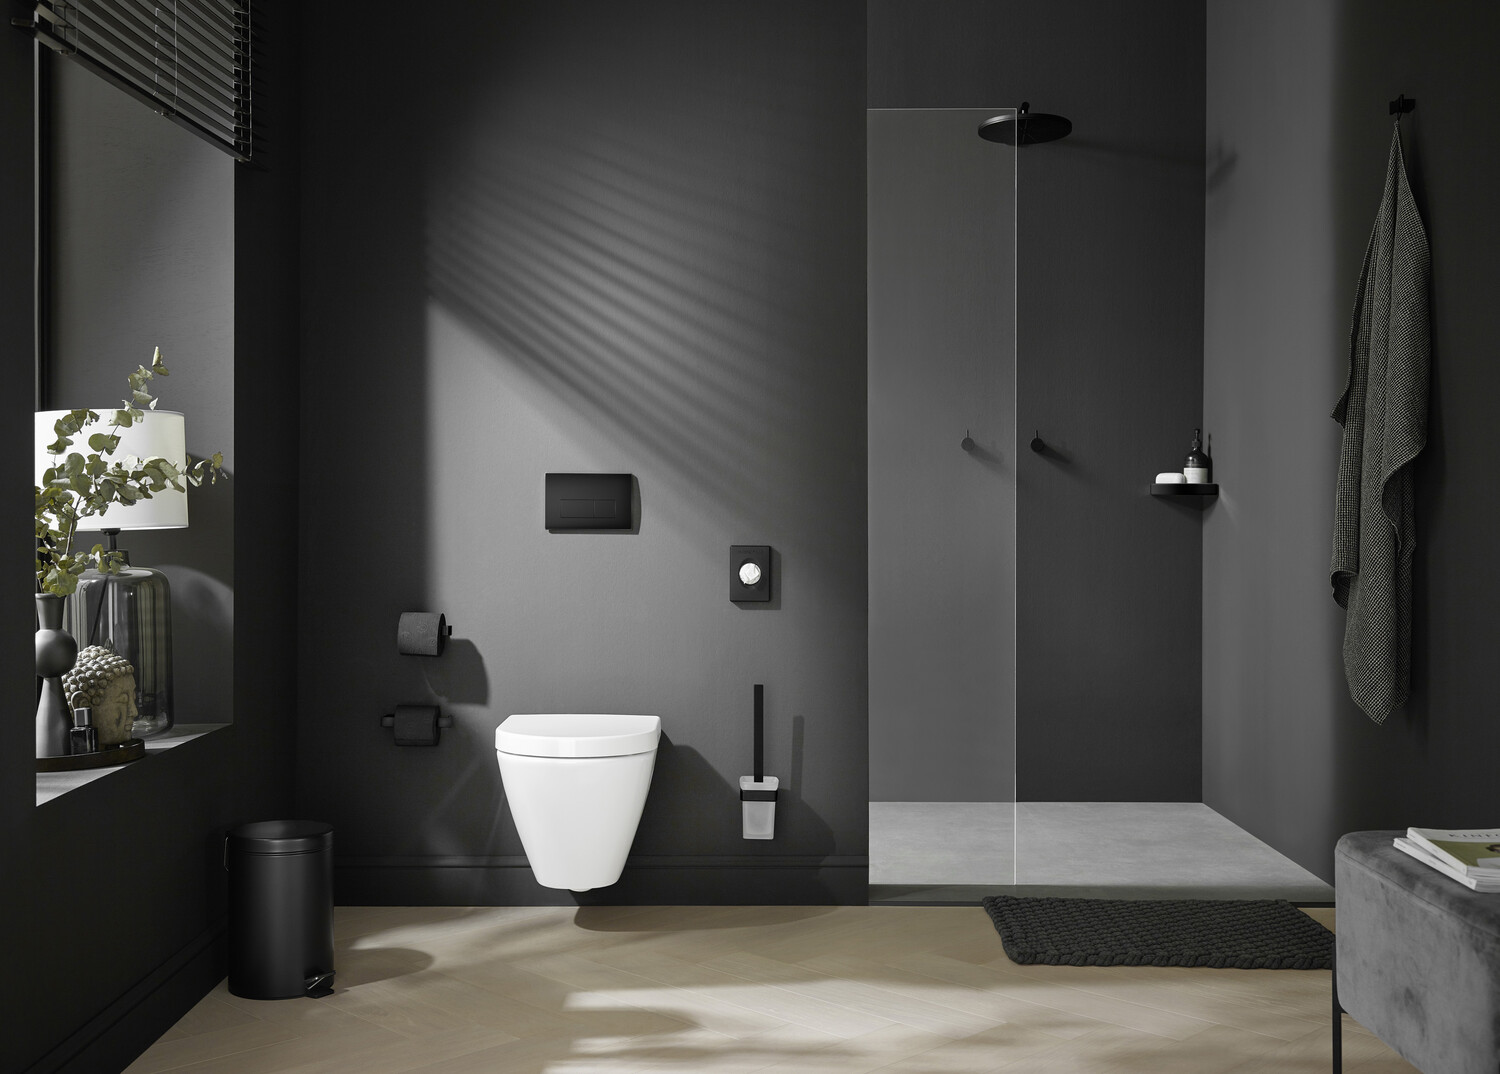 emco Toilettenbürstengarnitur „loft“ in chrom / schwarz, Befestigung verdeckt